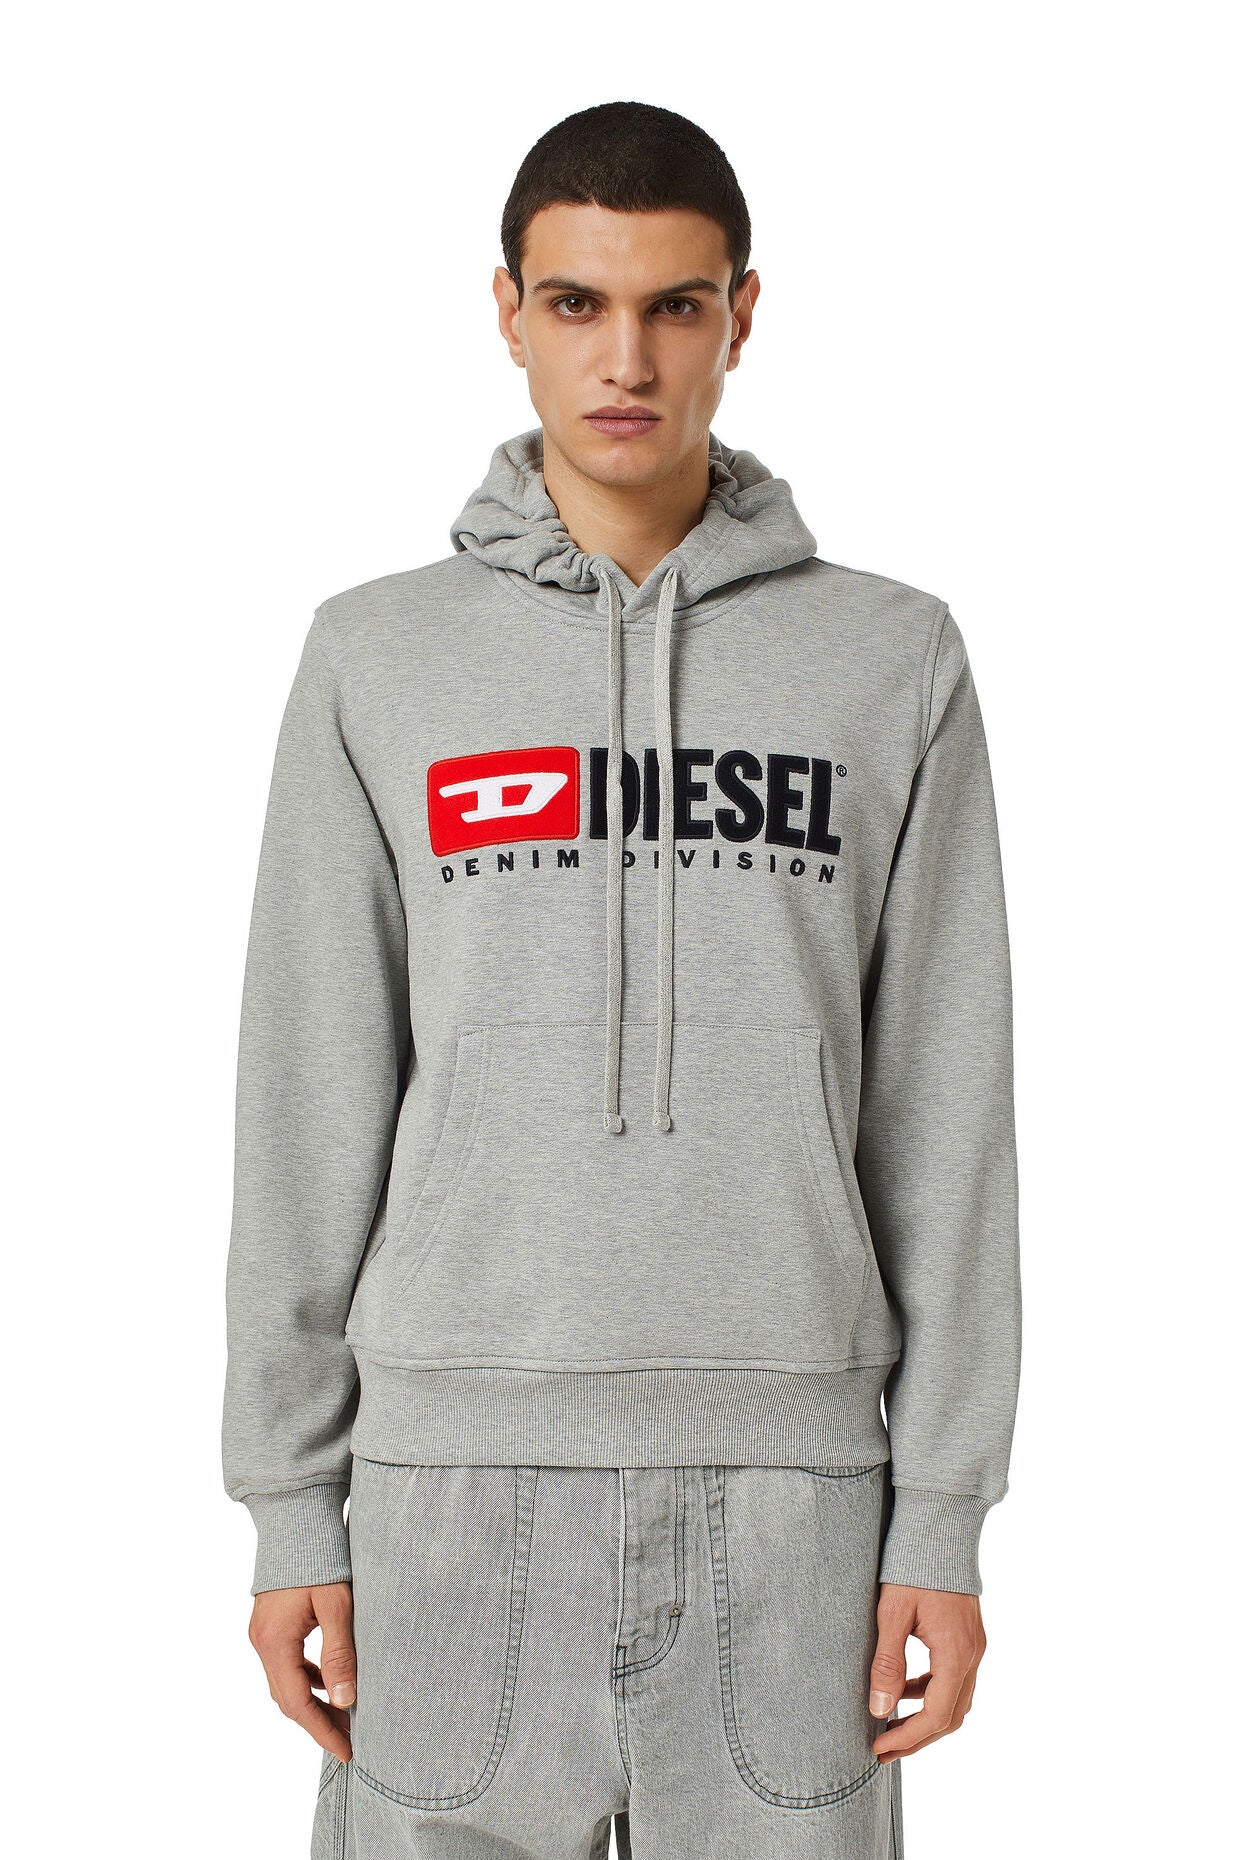 diesel-men-hoodie